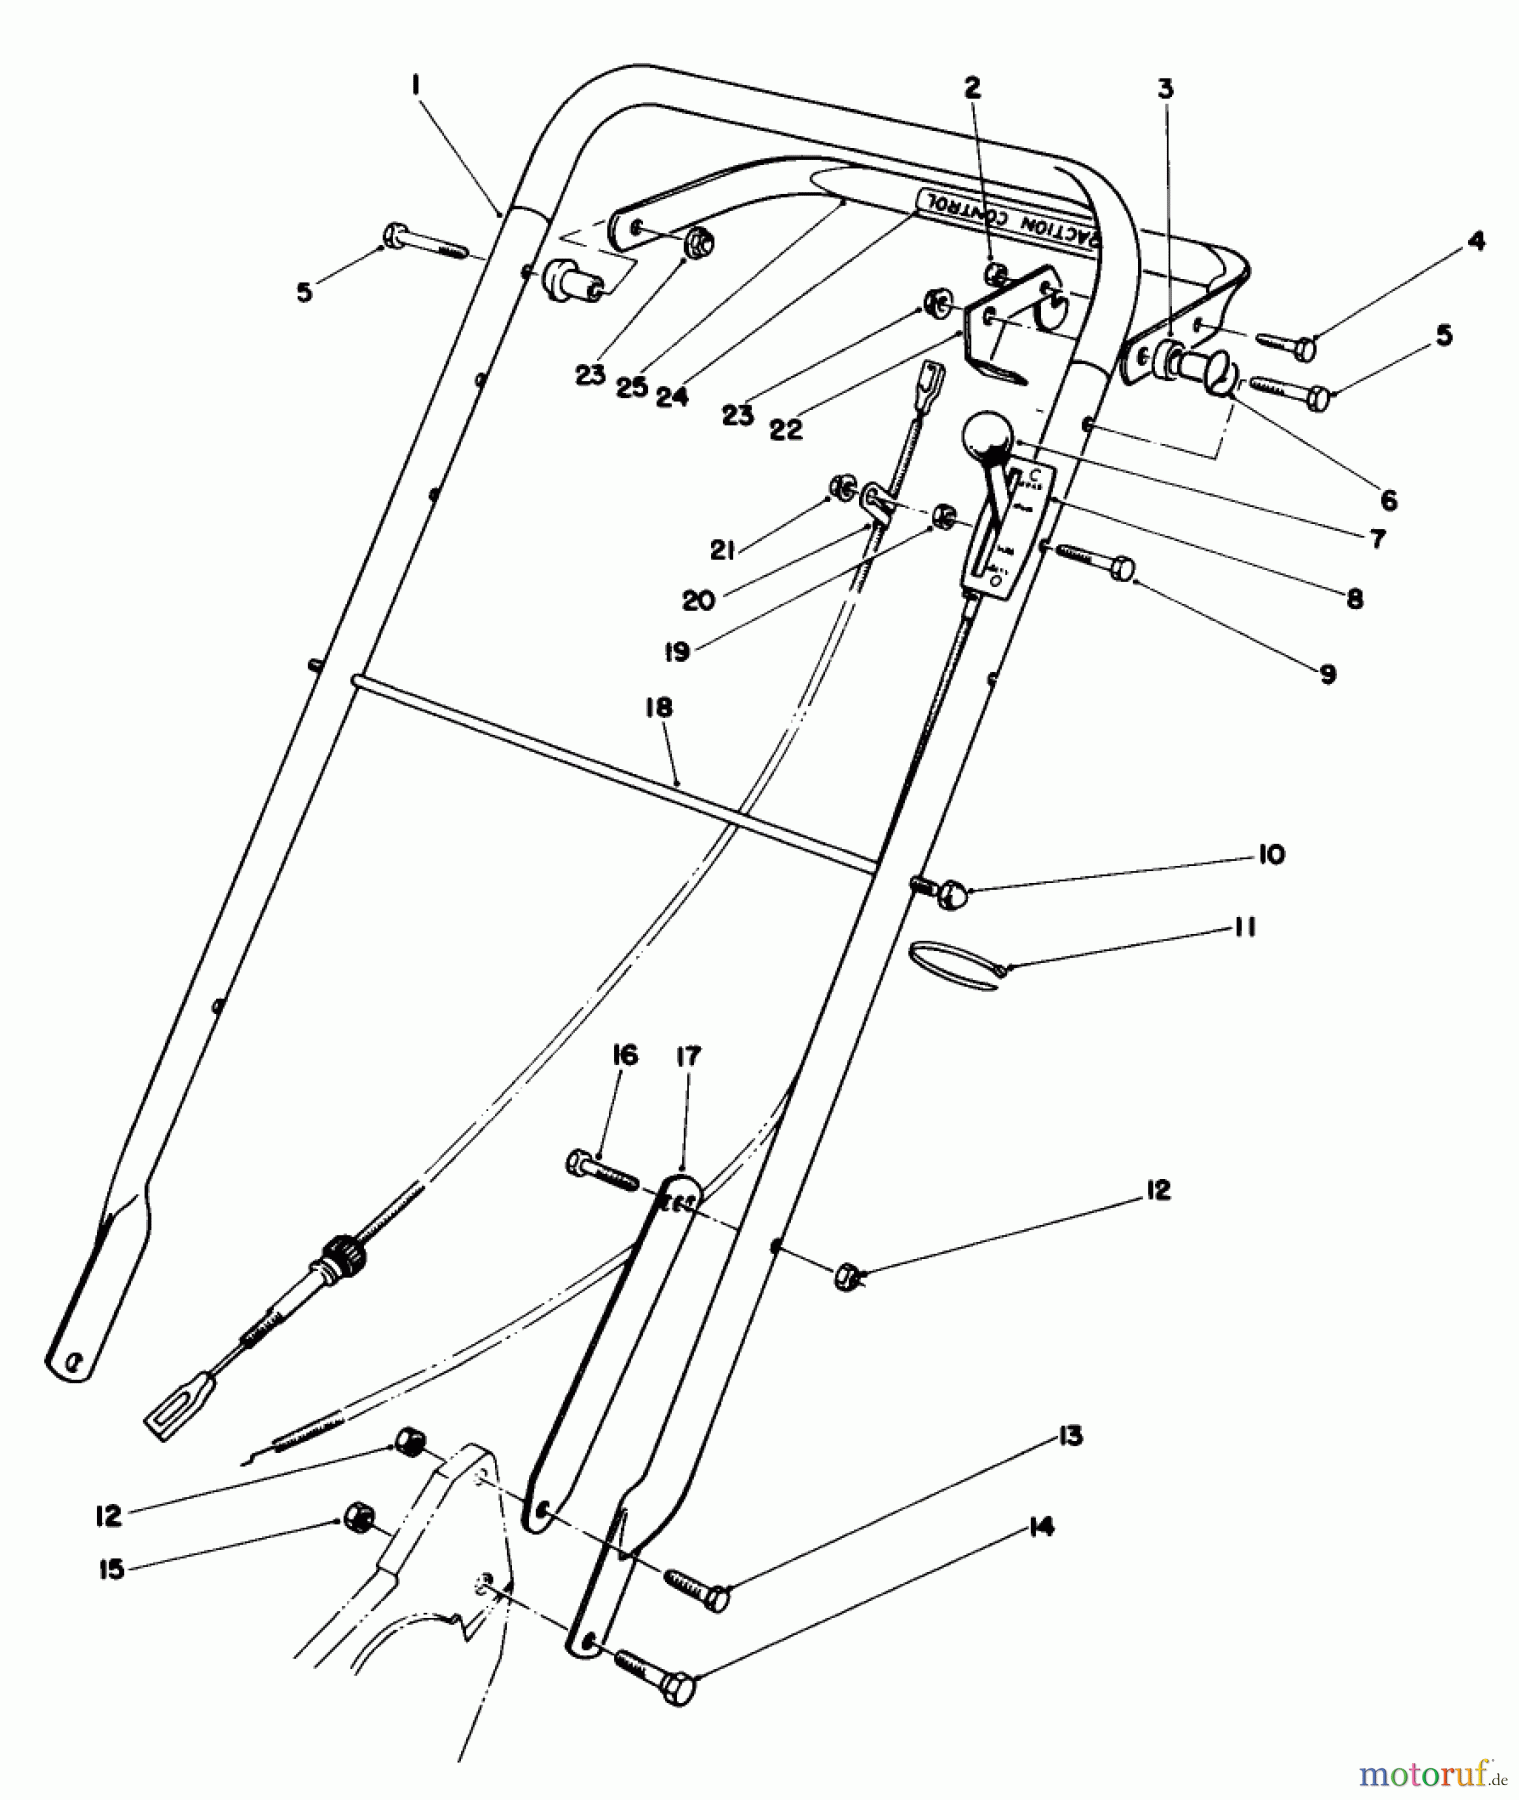  Toro Neu Mowers, Walk-Behind Seite 2 22621 - Toro Lawnmower, 1987 (7000001-7999999) HANDLE ASSEMBLY (MODEL NO. 22621)